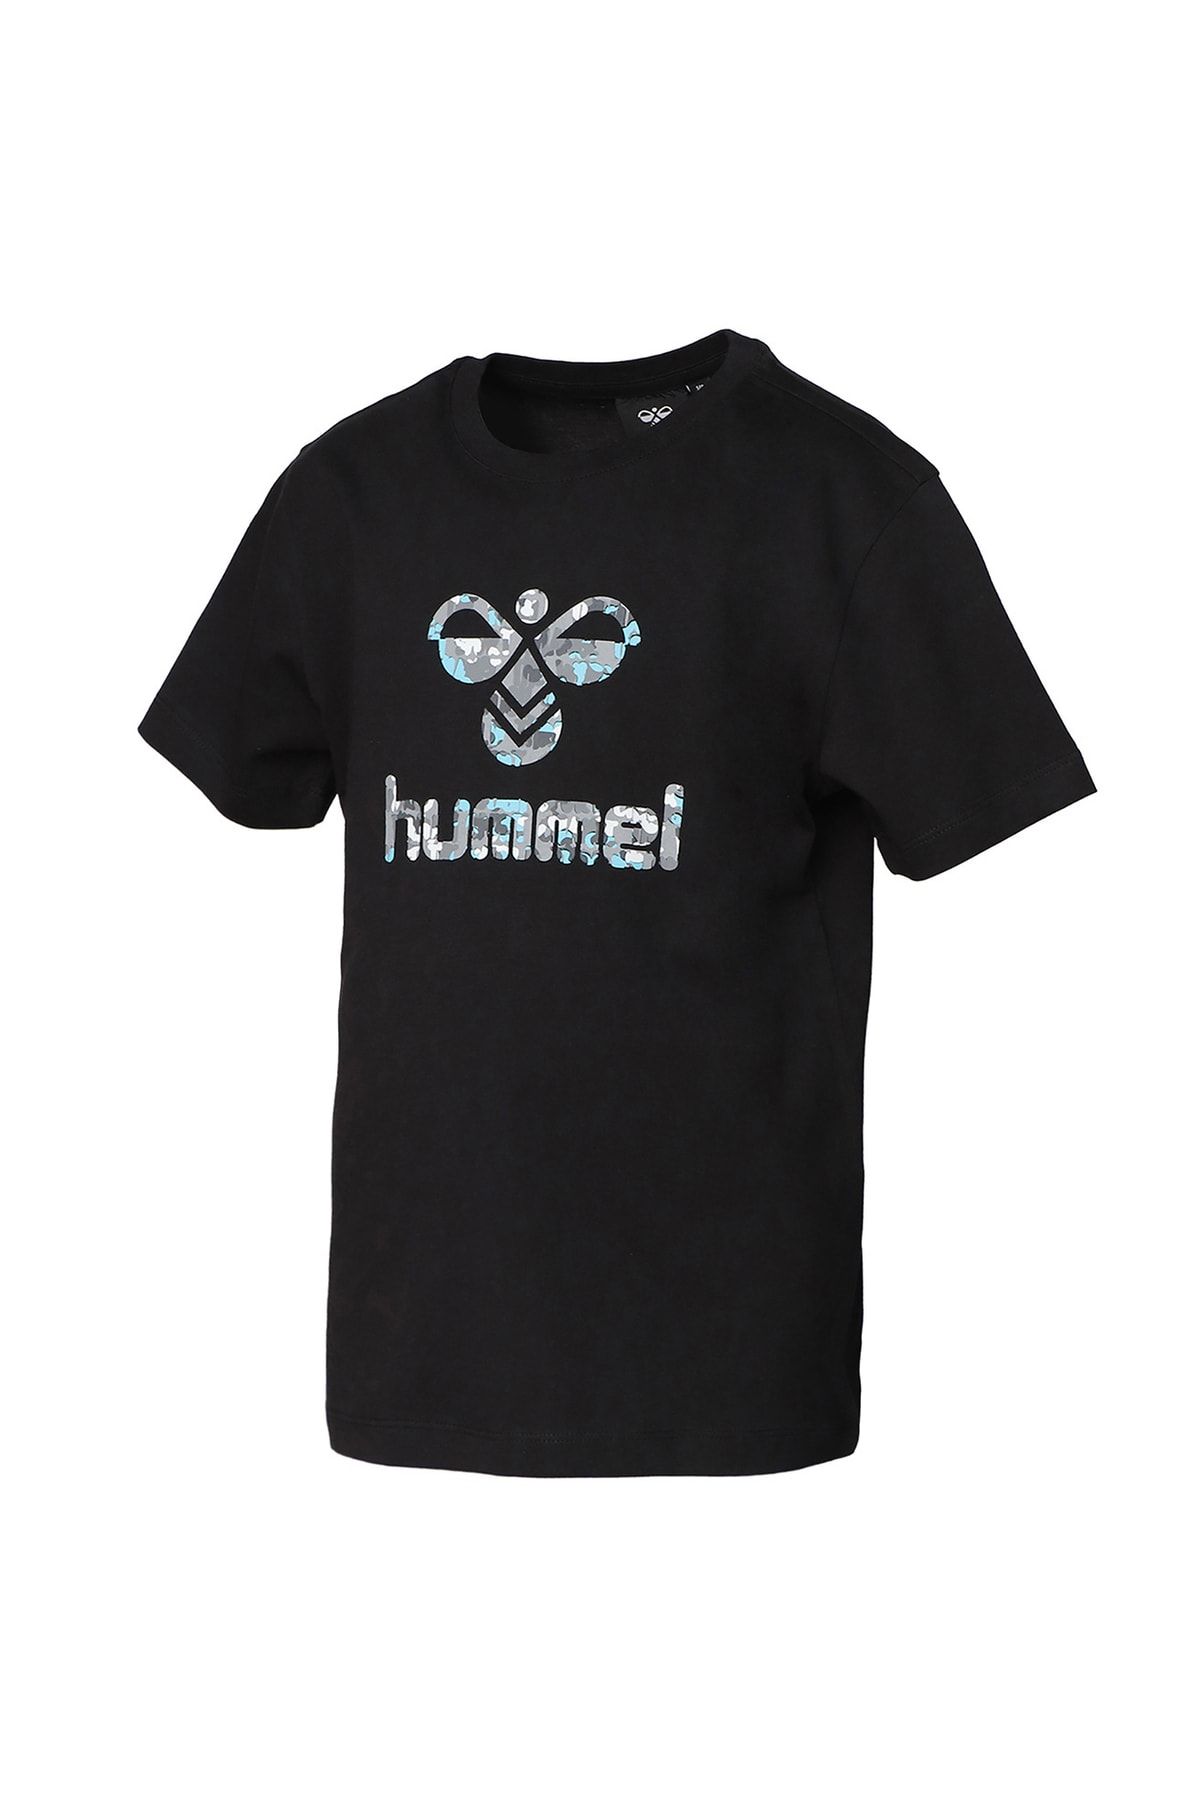 hummel Baskılı Siyah Erkek Çocuk T-shirt 911656-2001 Hmlgaıman T-shırt S/s